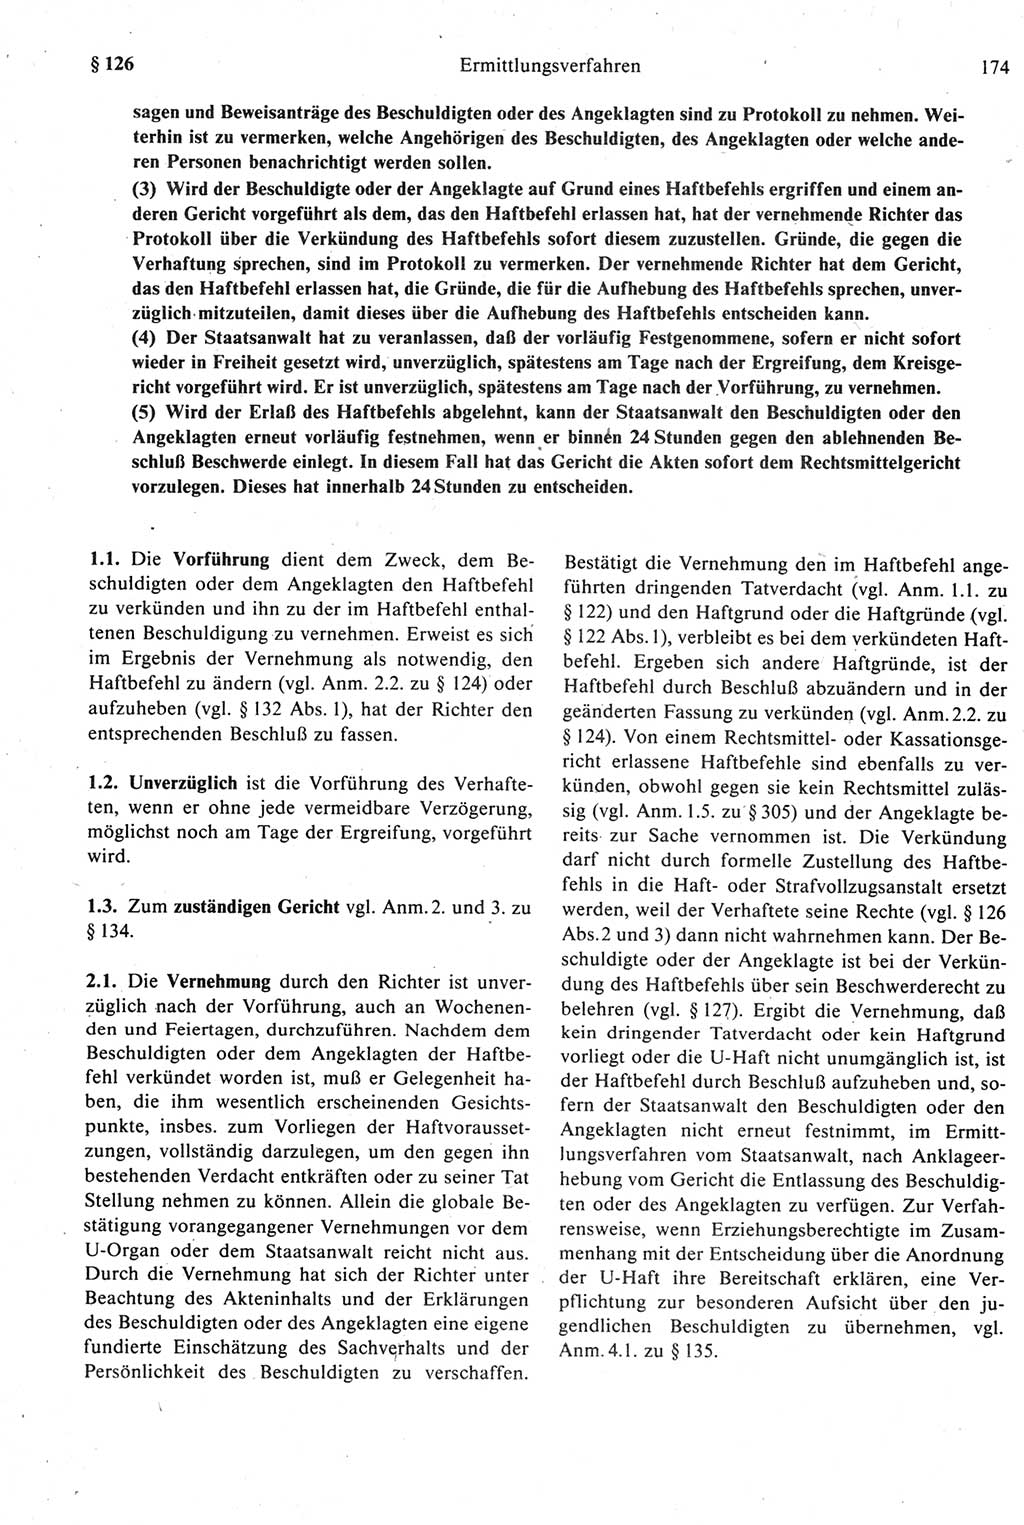 Strafprozeßrecht der DDR [Deutsche Demokratische Republik], Kommentar zur Strafprozeßordnung (StPO) 1987, Seite 174 (Strafprozeßr. DDR Komm. StPO 1987, S. 174)